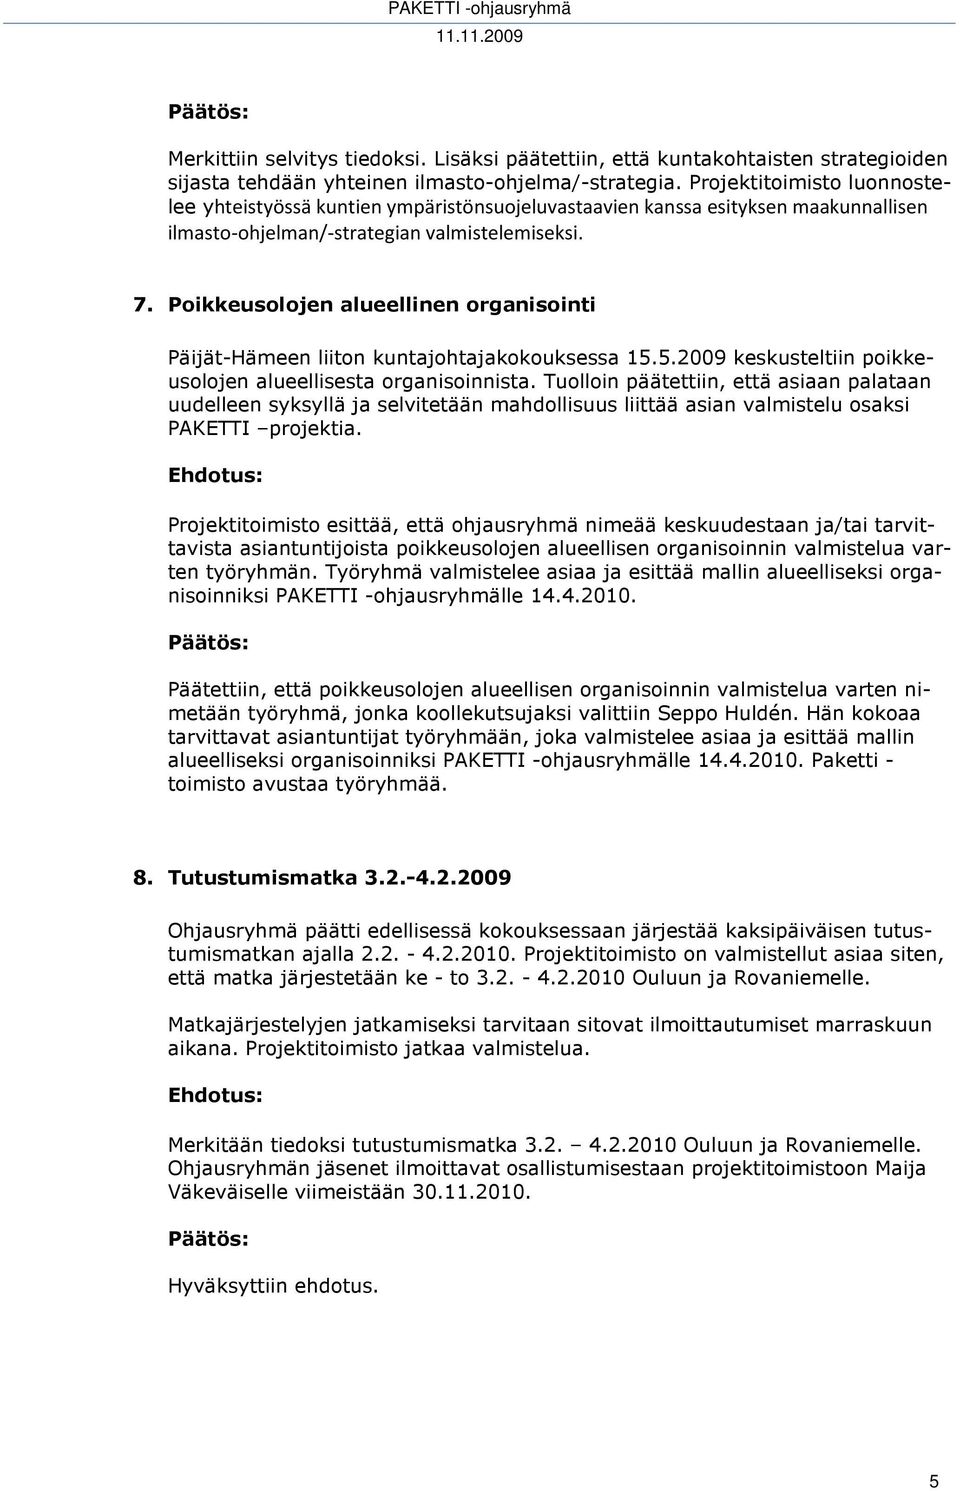 Poikkeusolojen alueellinen organisointi Päijät-Hämeen liiton kuntajohtajakokouksessa 15.5.2009 keskusteltiin poikkeusolojen alueellisesta organisoinnista.